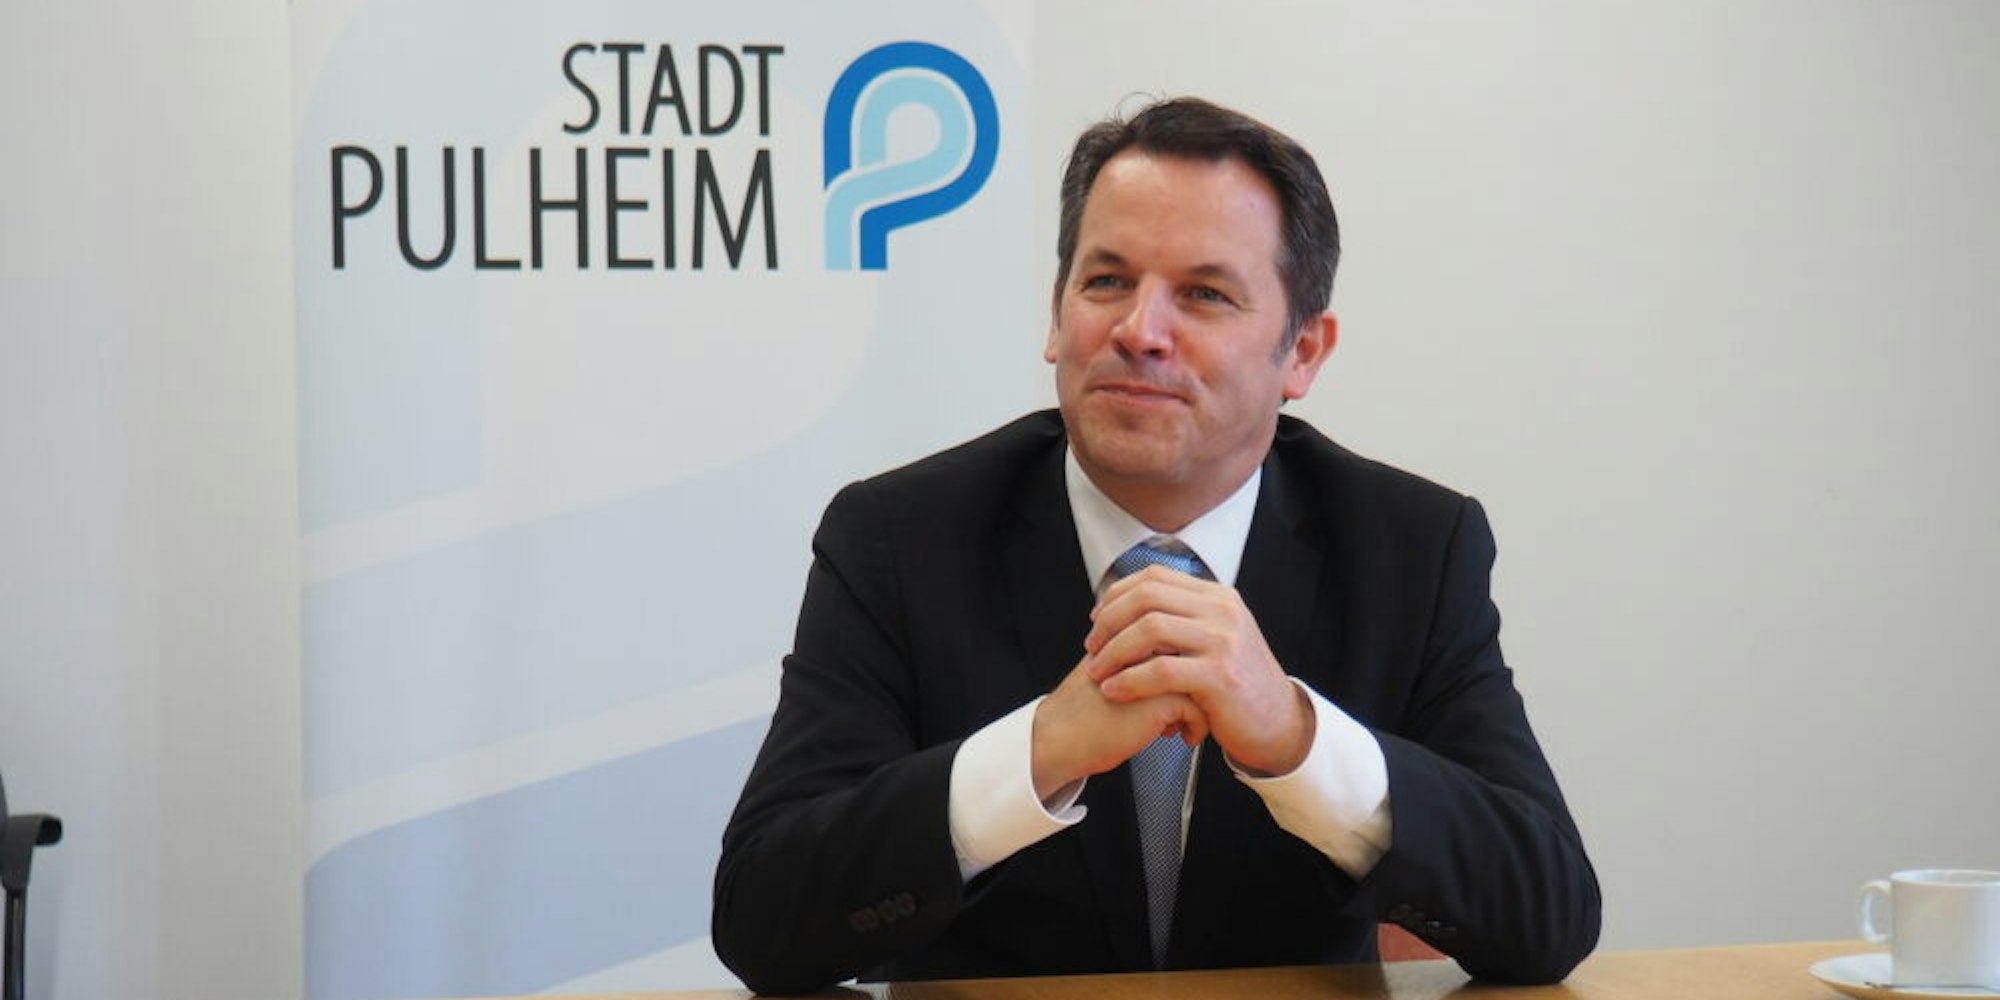 Frank Keppeler ist seit 2009 im Amt und somit der dienstälteste Bürgermeister im Rhein-Erft-Kreis.